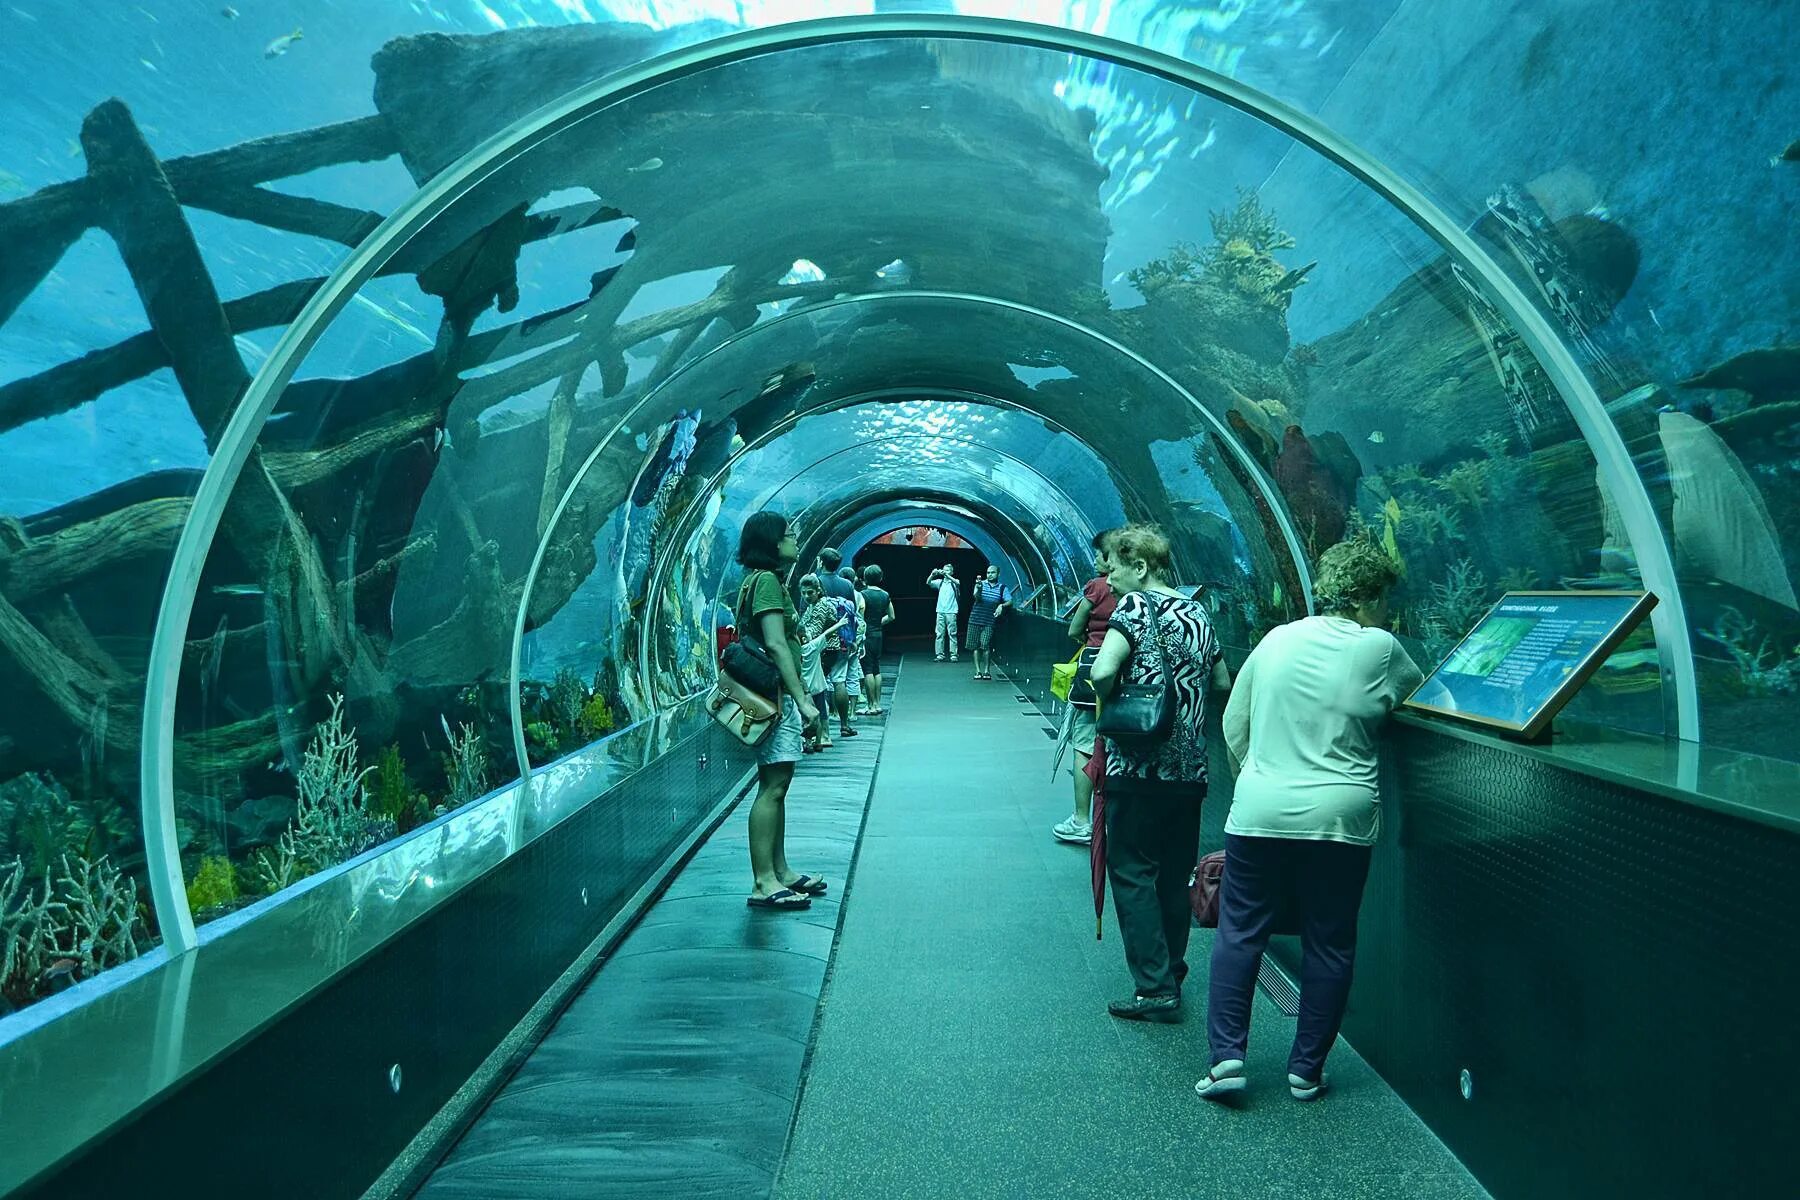 Marine aquarium. Океанариум в Сингапуре s.e.a. Aquarium. Сингапур Сентоза океанариум. Marine Life Park, Сингапур. Морская жизнь (Marine Life Park)в Сингапуре.